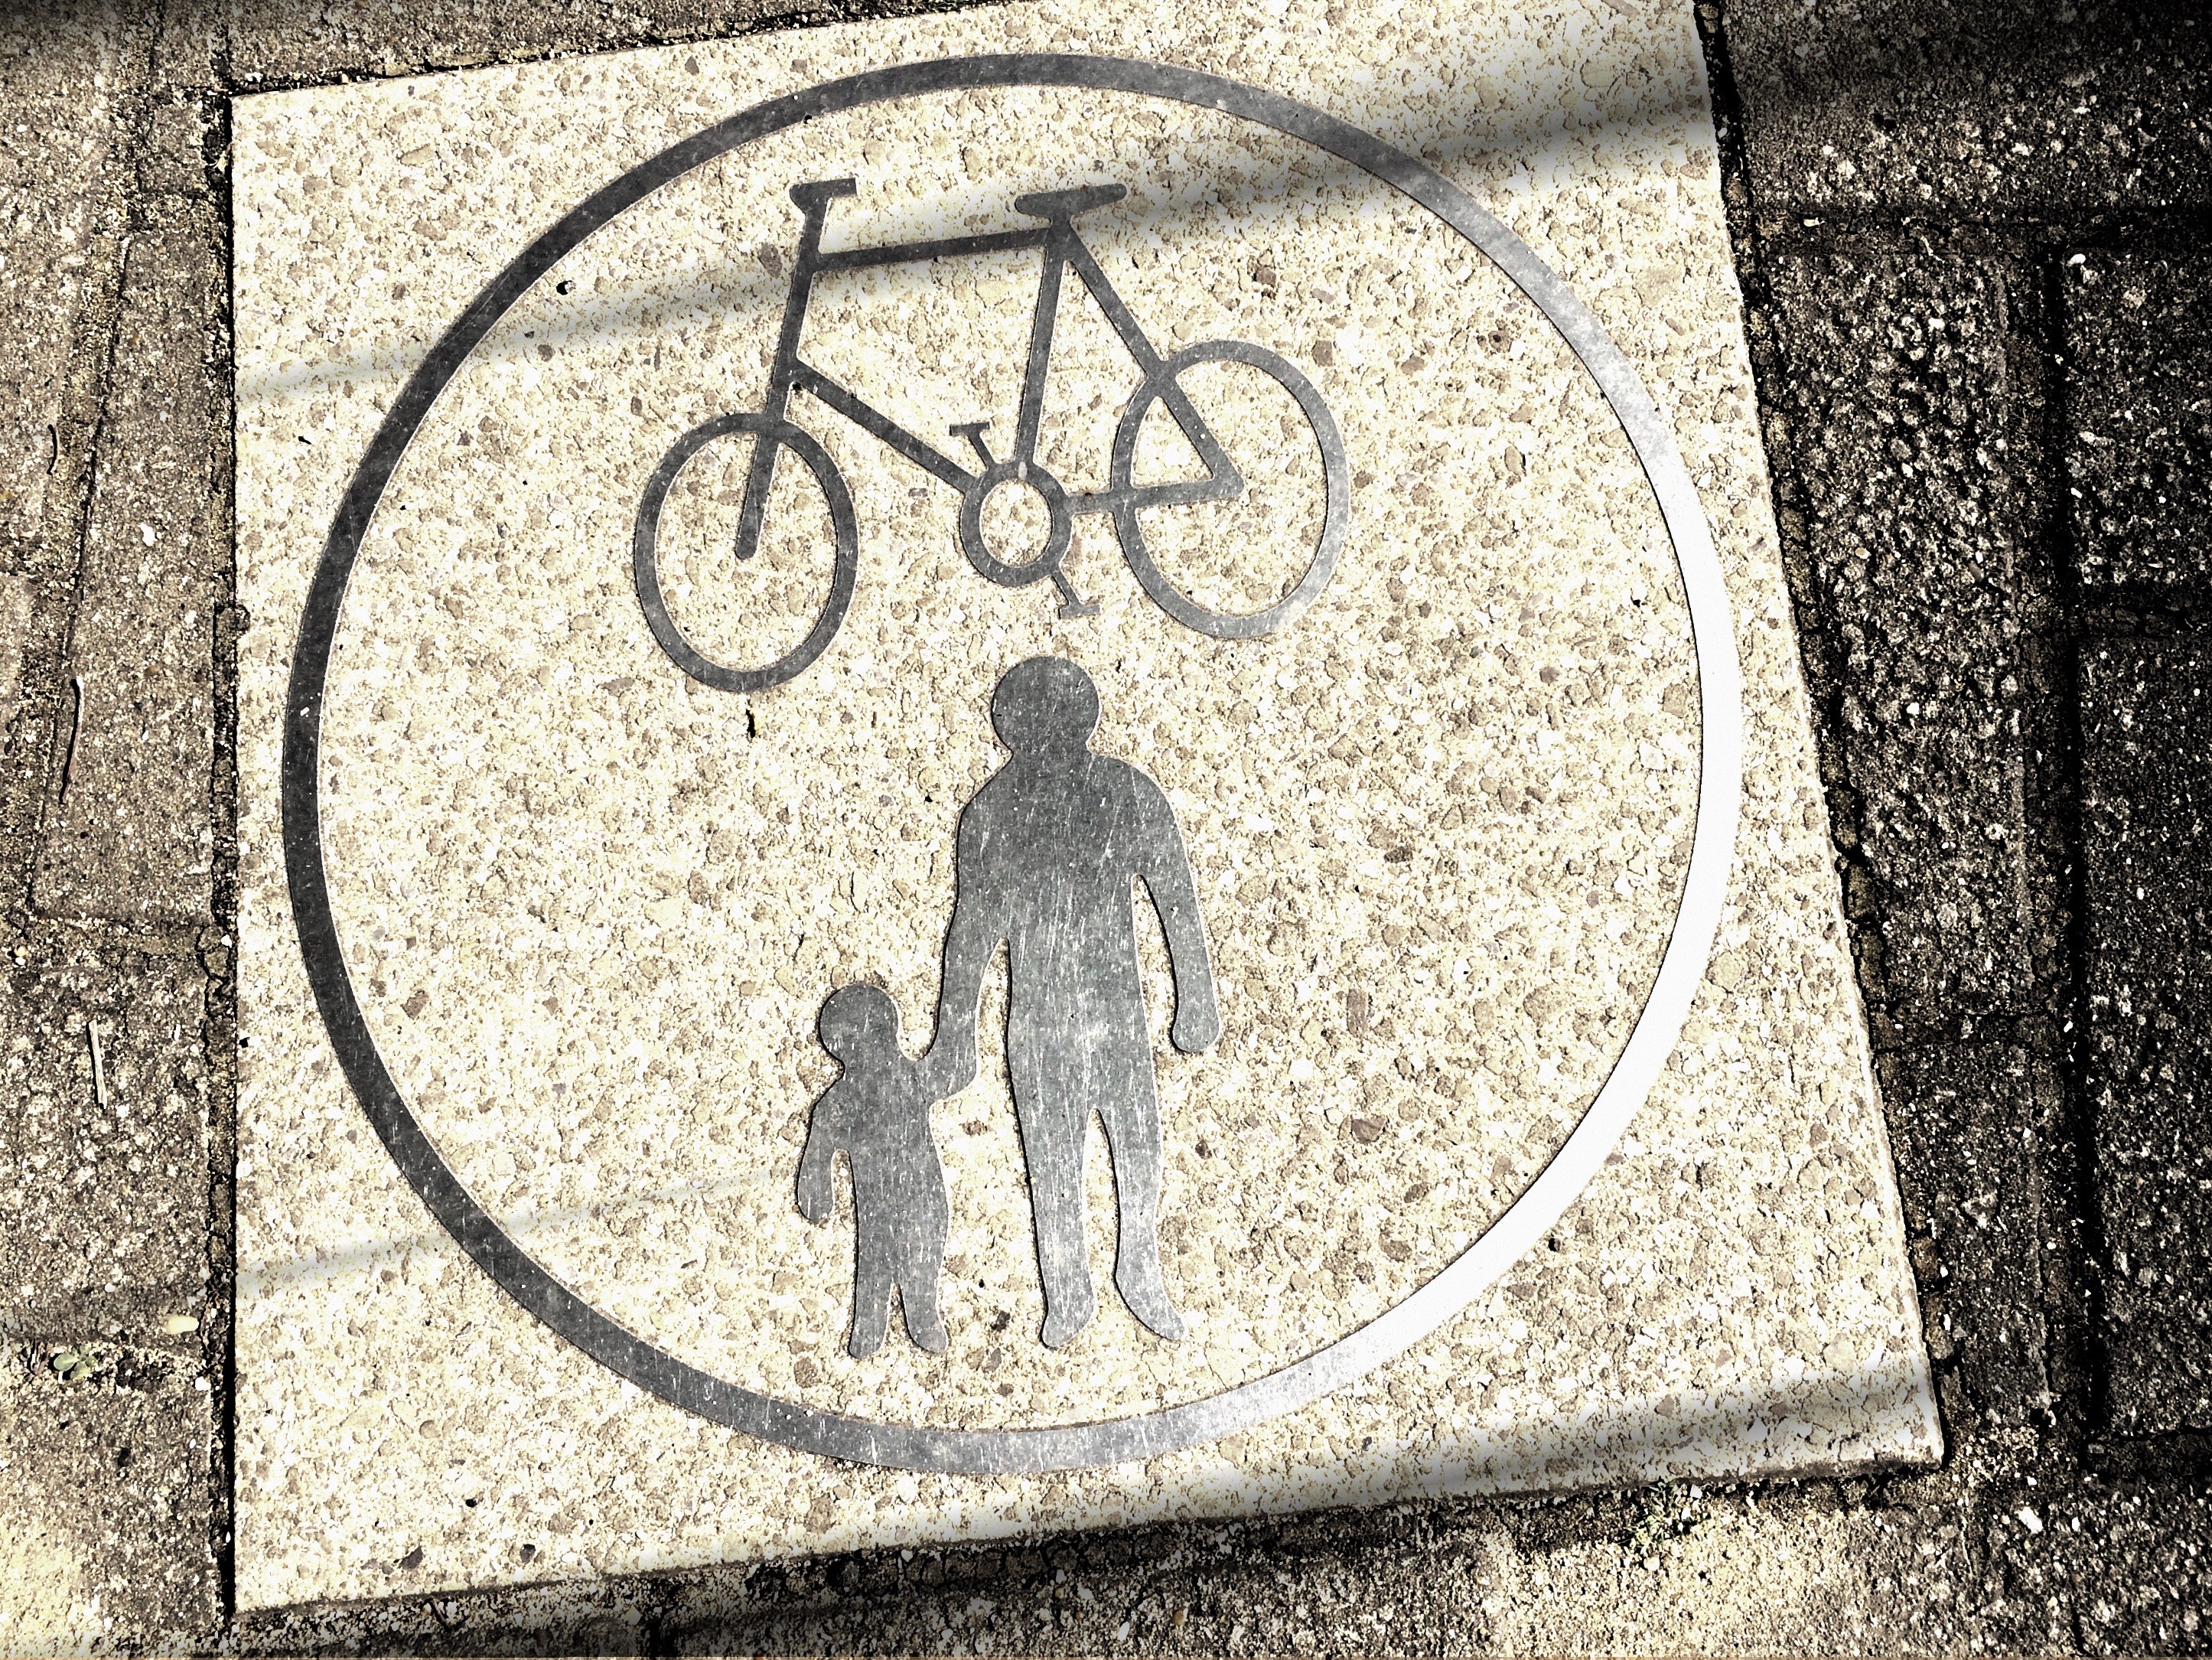 Bike and pedestrian sign (© Adam Hill)